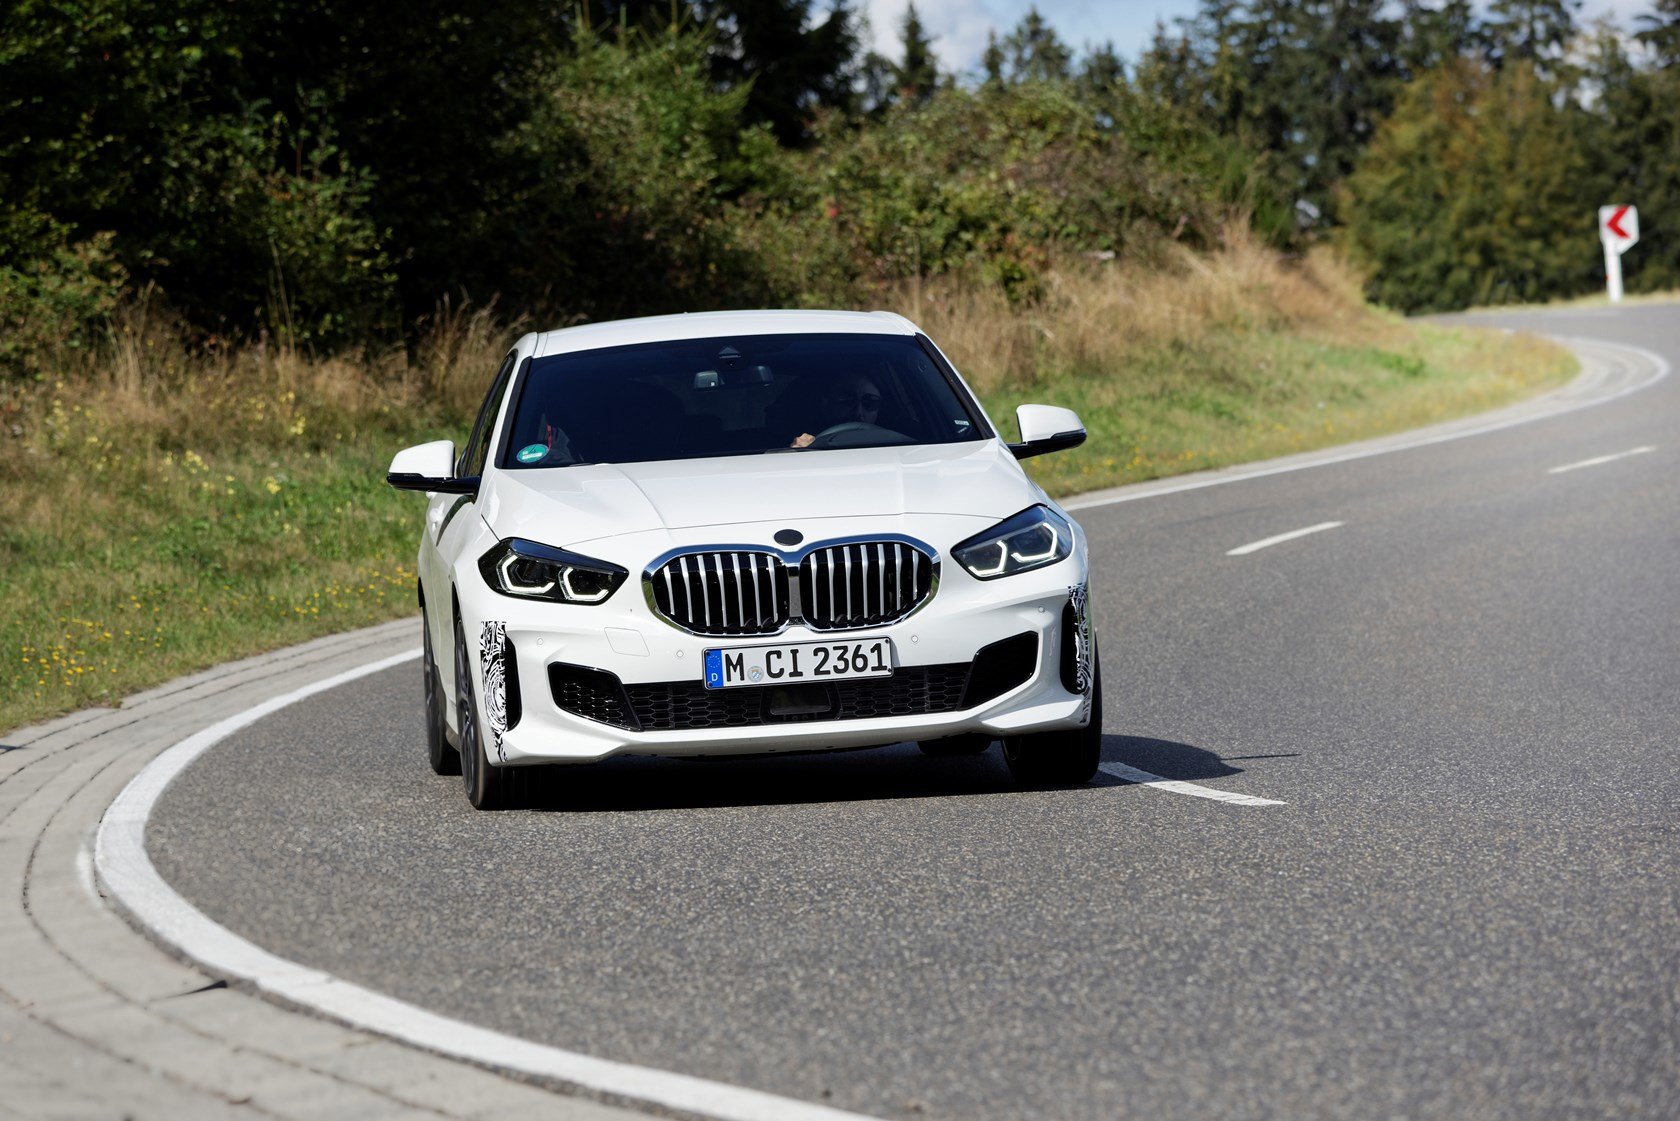 BMW 128ti je sportovní variantou BMW řady 1 s předním pohonem a mechanickým samosvorným diferenciálem Torsen